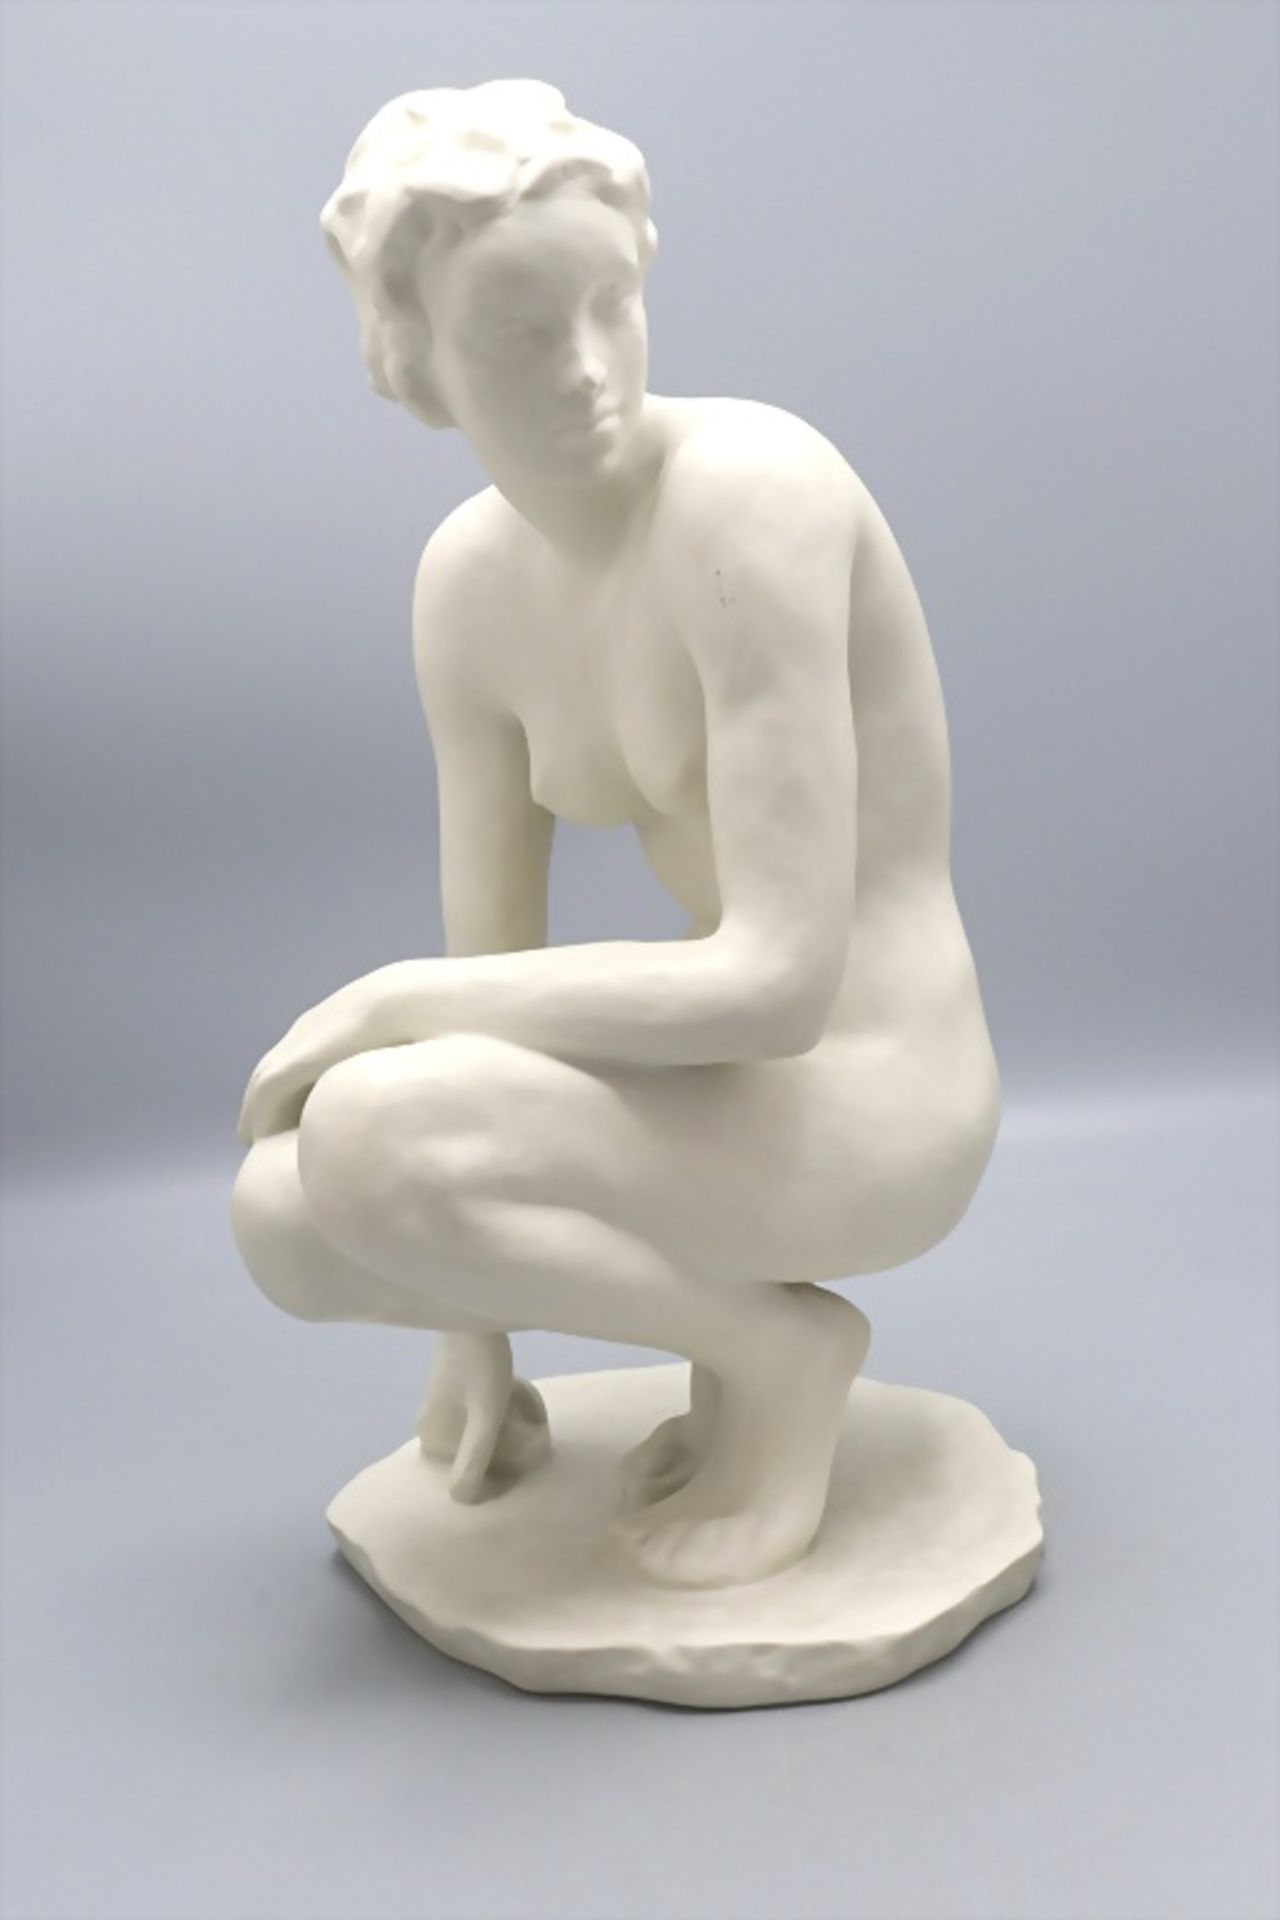 Porzellanfigur 'Die Hockende' / A porcelain figure of 'A crouching woman', Fritz Klimsch, ...